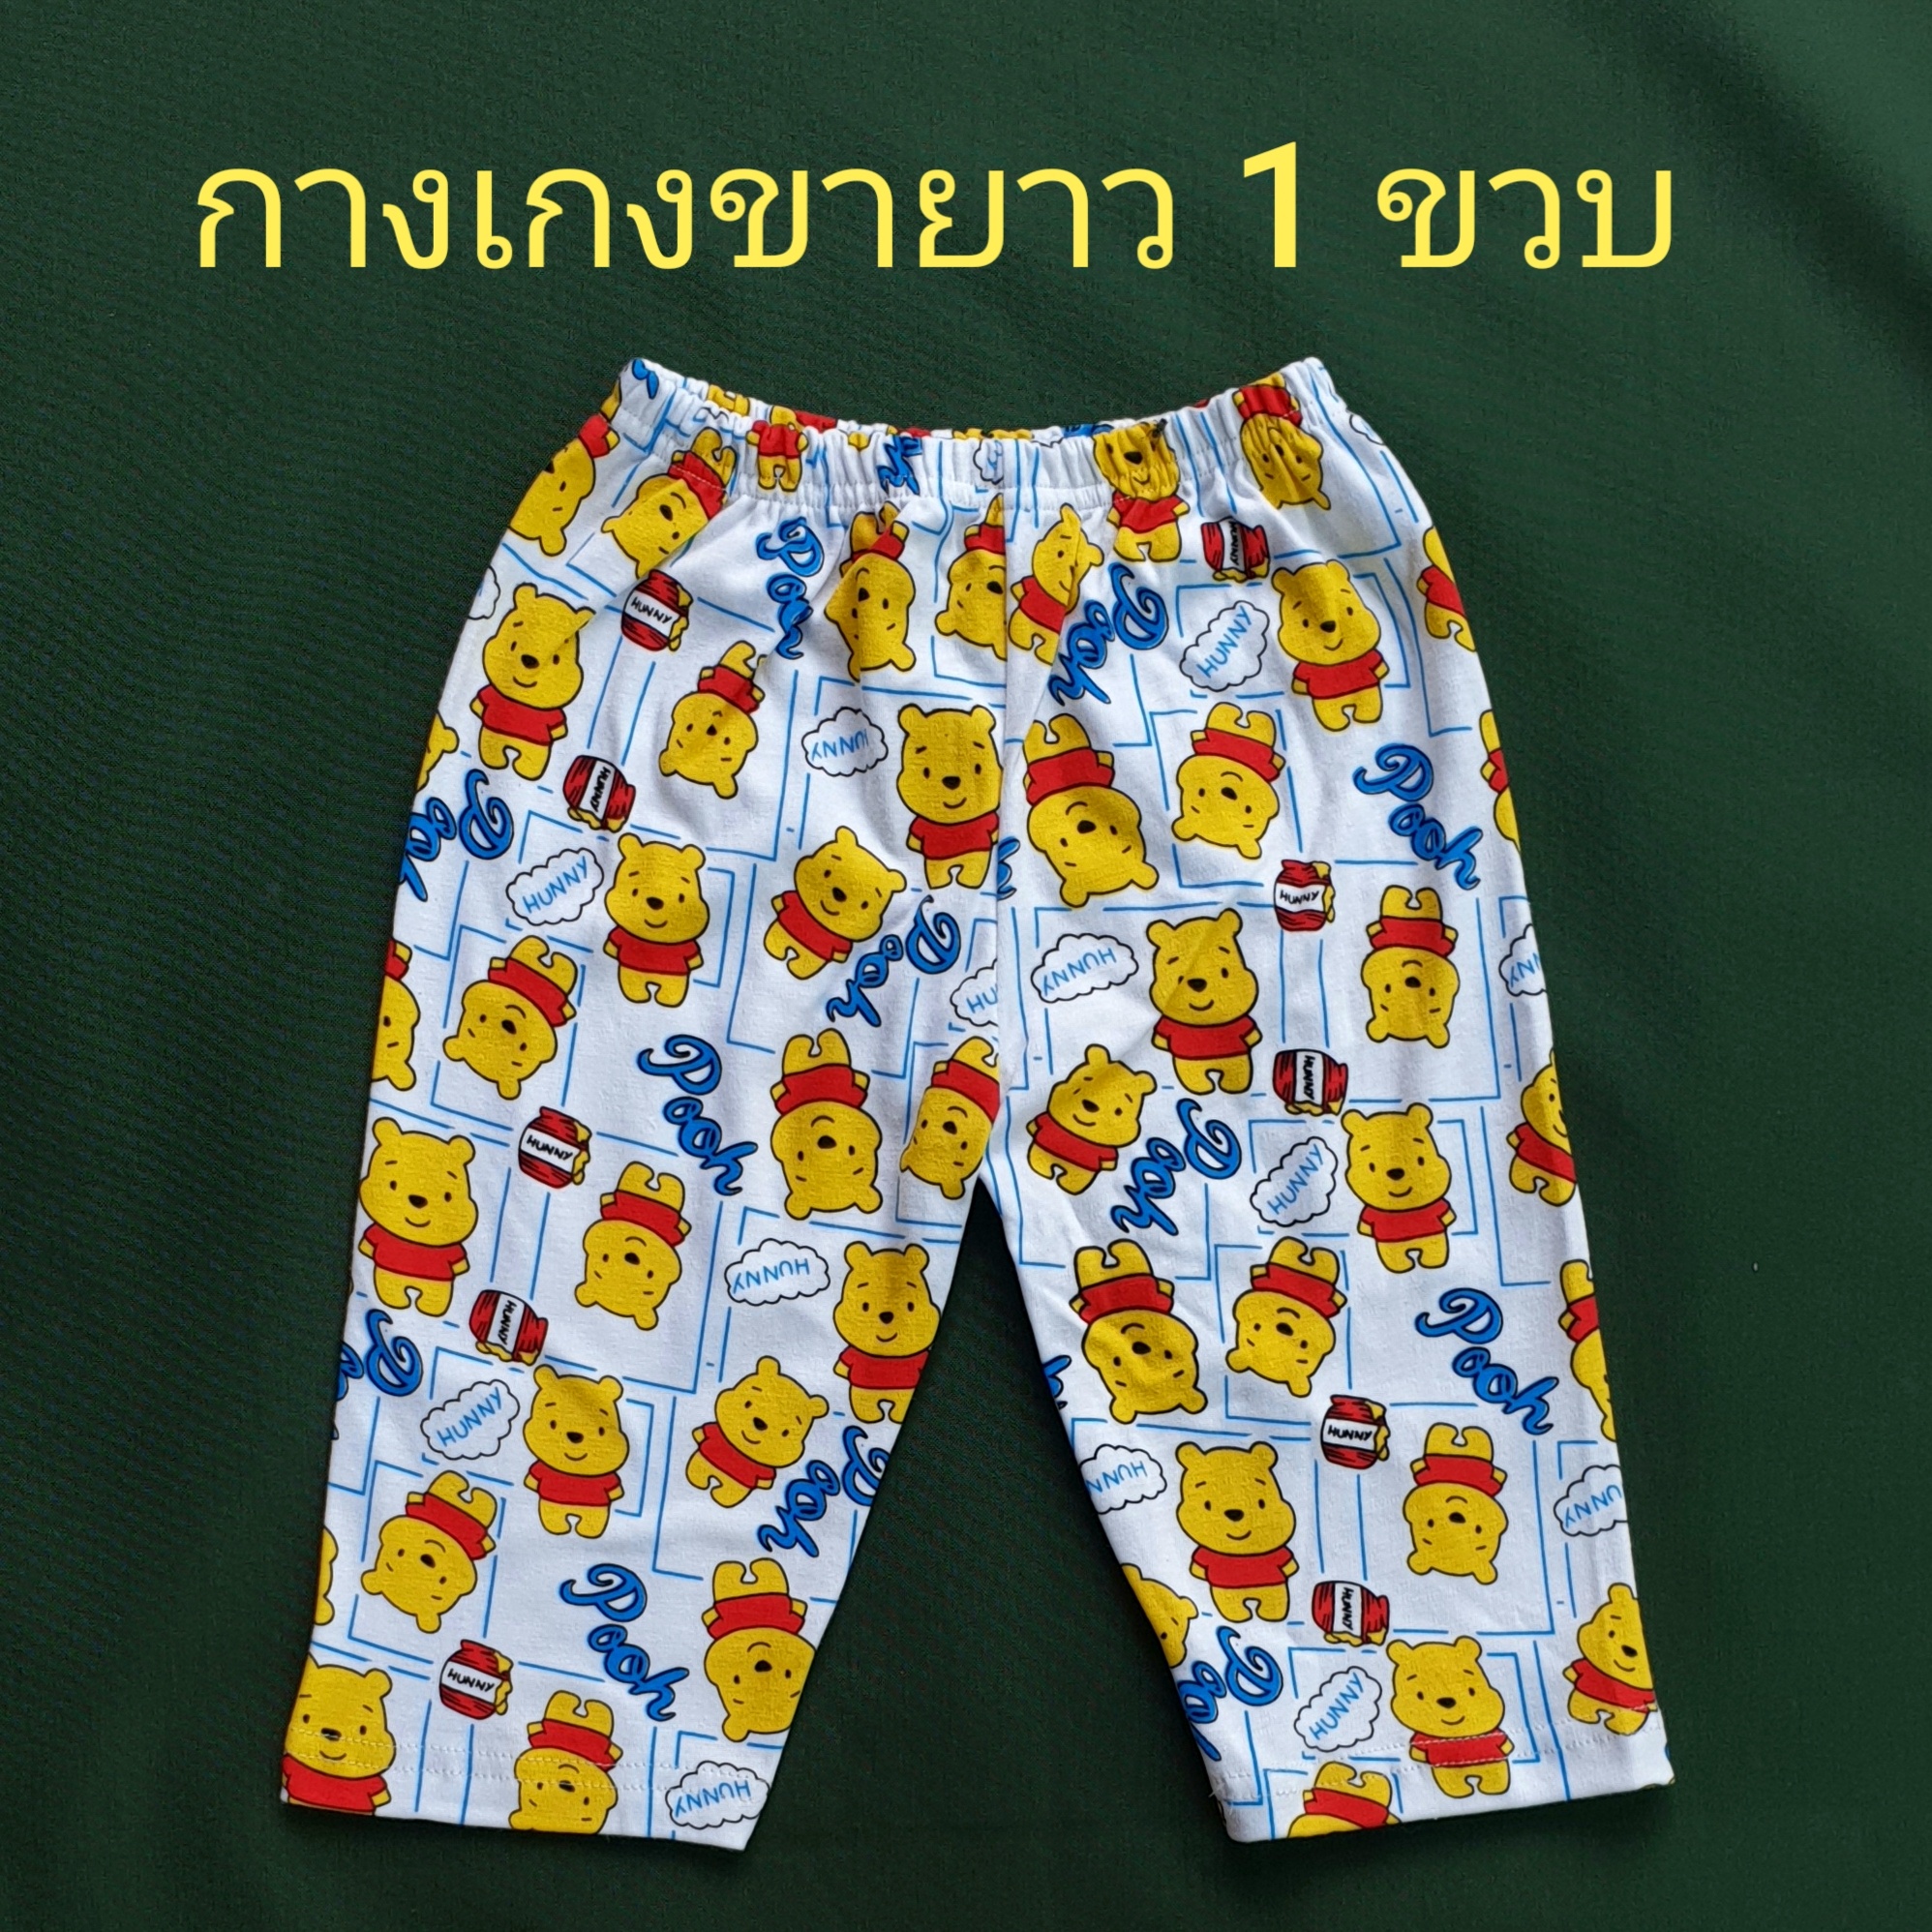 กางเกงขายาวเด็ก 1T (1 ขวบ) กางเกงขายาว ขายาว ขายาวเด็ก